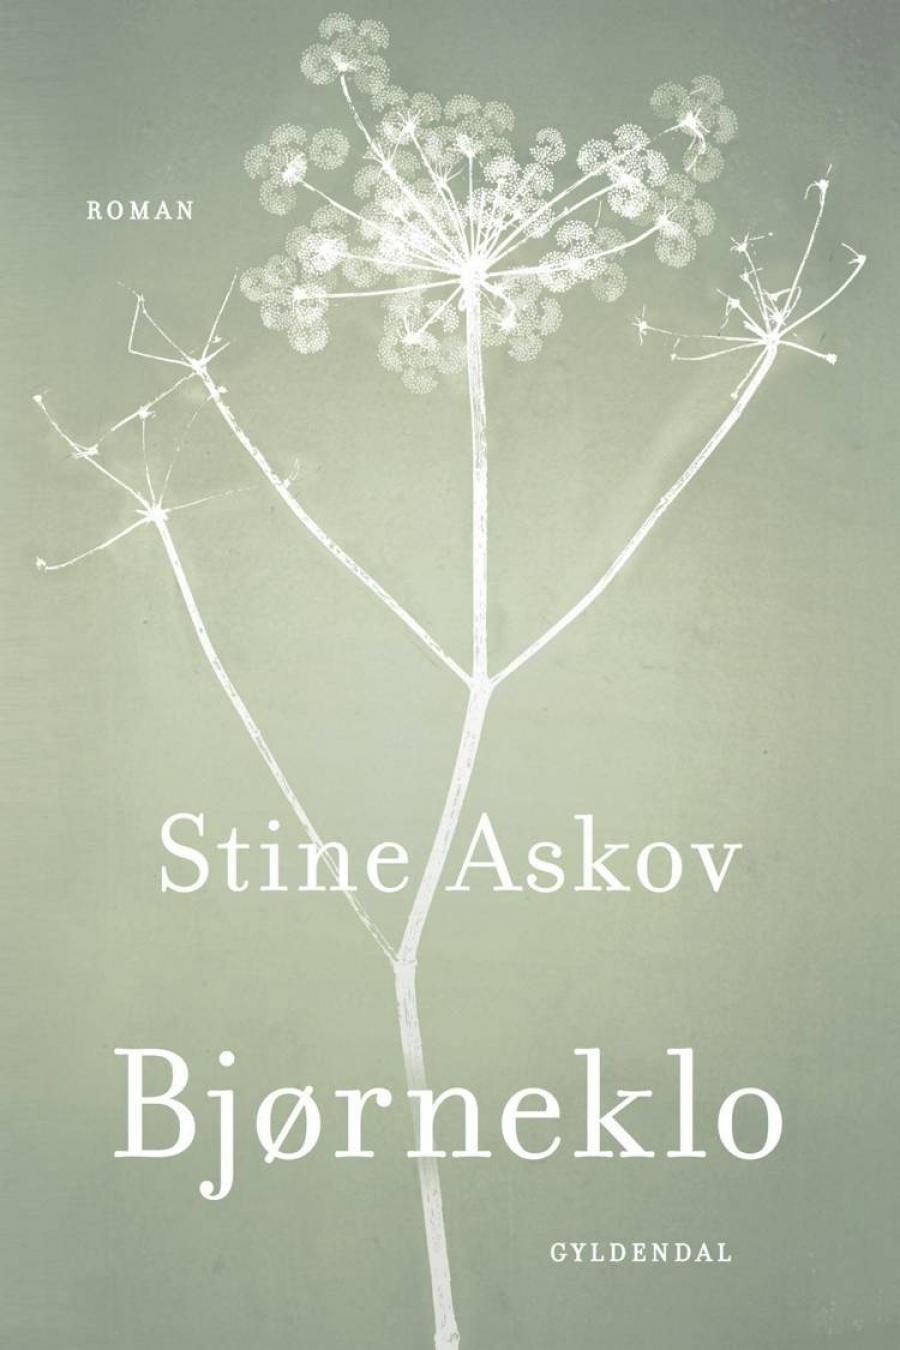 Forside på "Bjørneklo" af Stine Askov